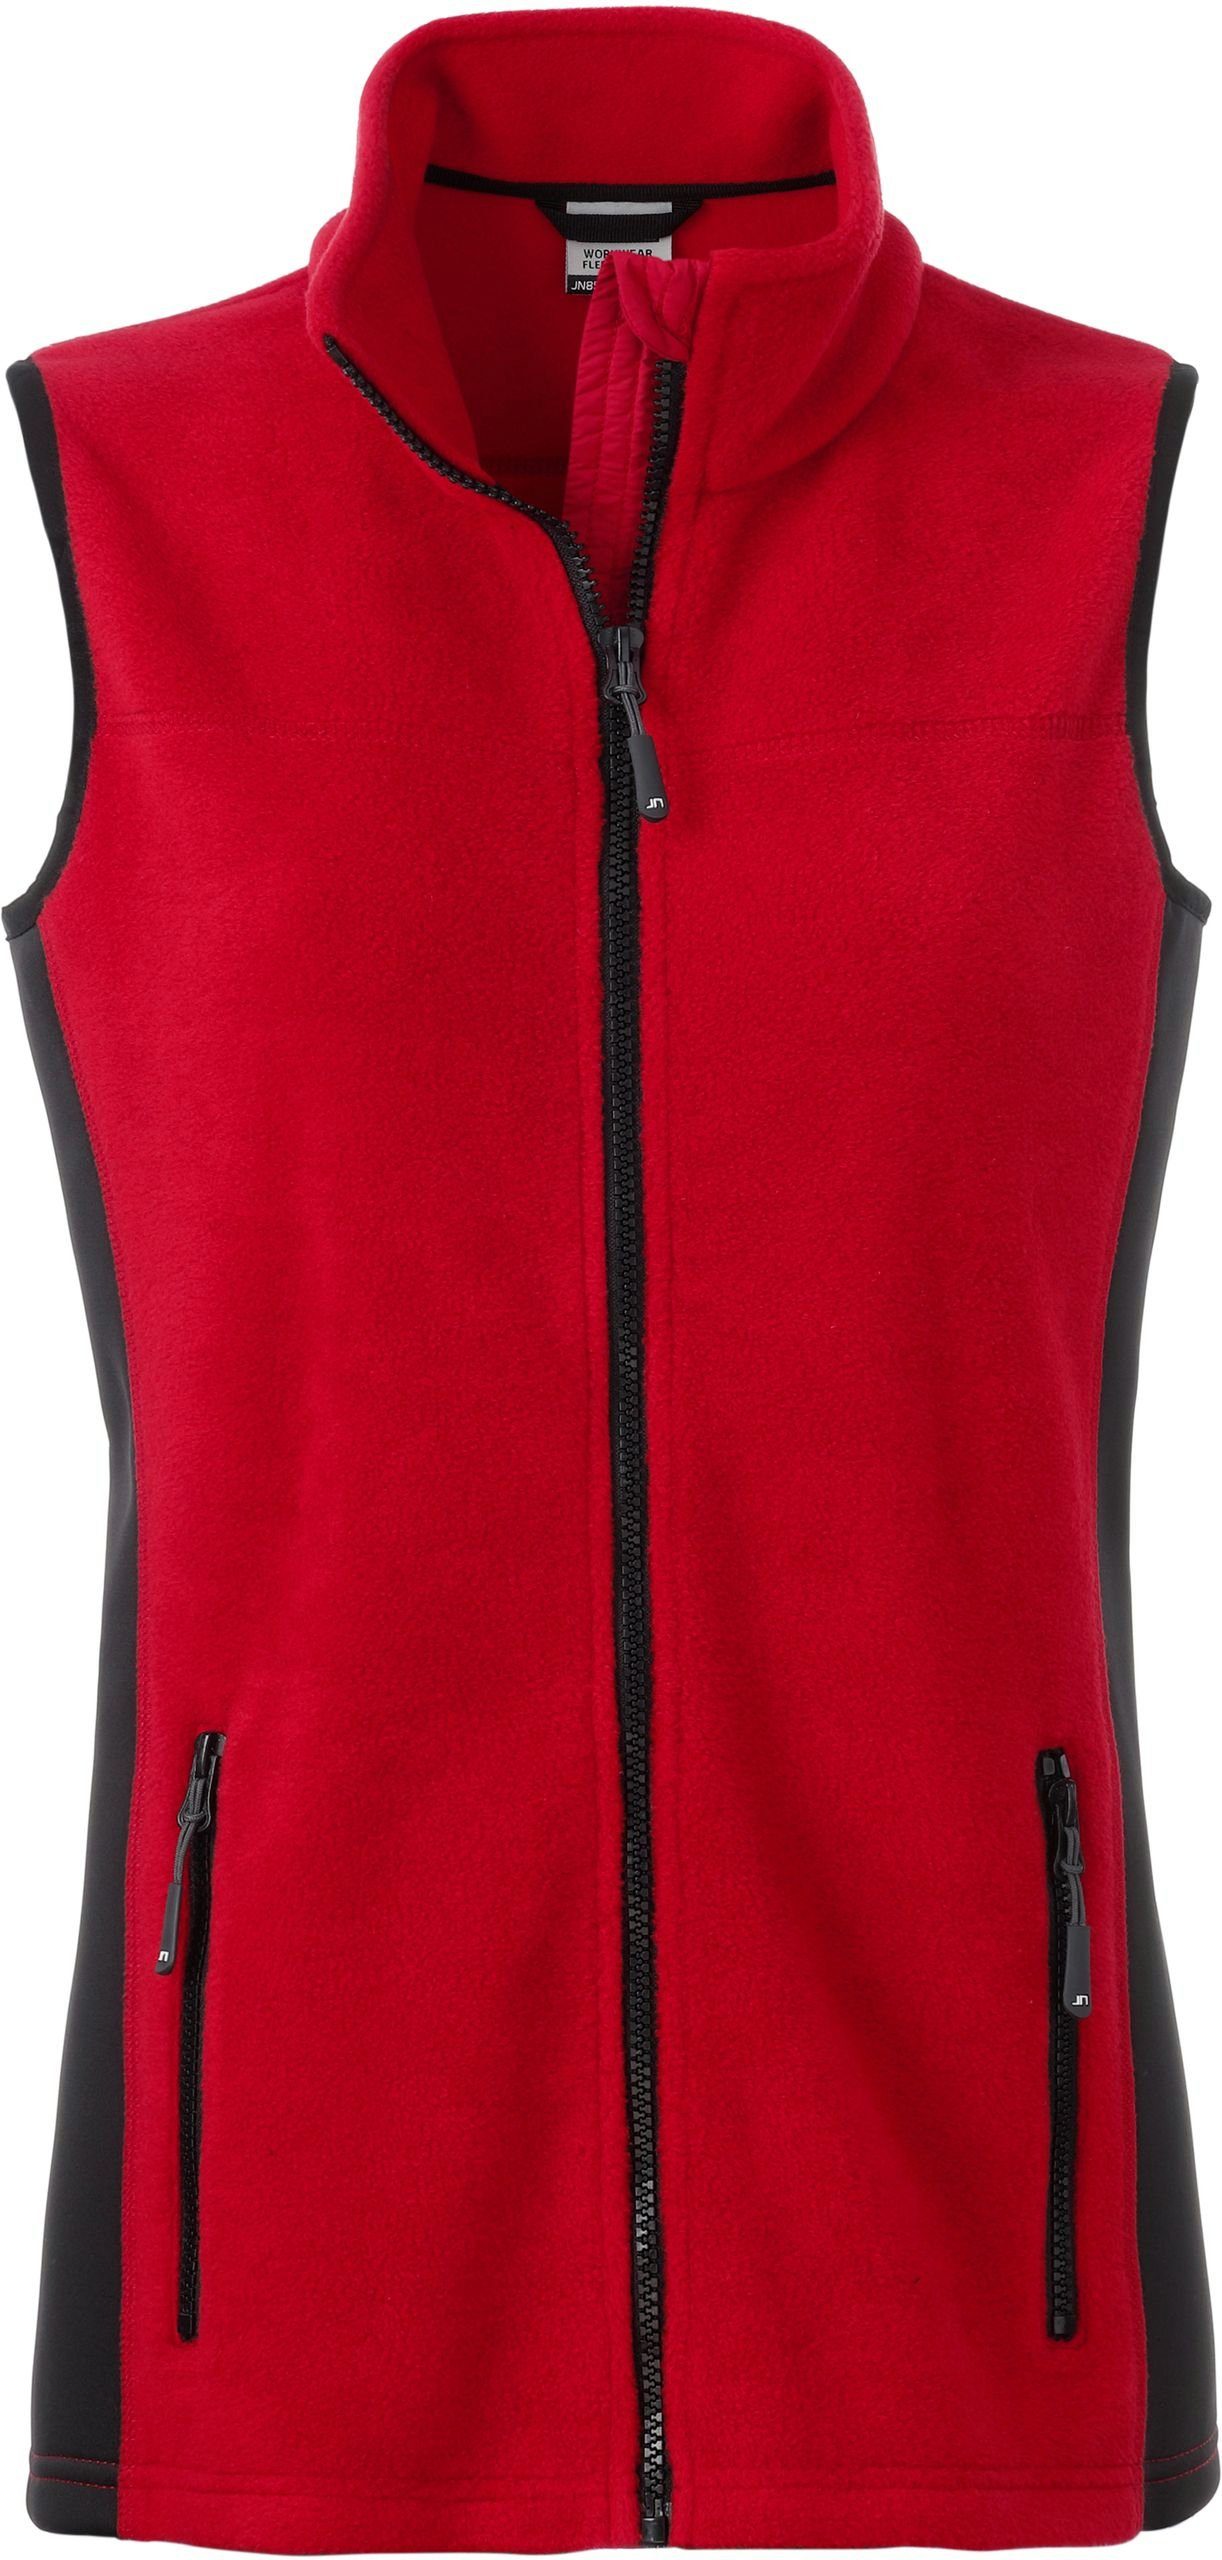 James & Nicholson Fleeceweste RED/BLACK Gilet FaS50855 Weste Fleece Workwear